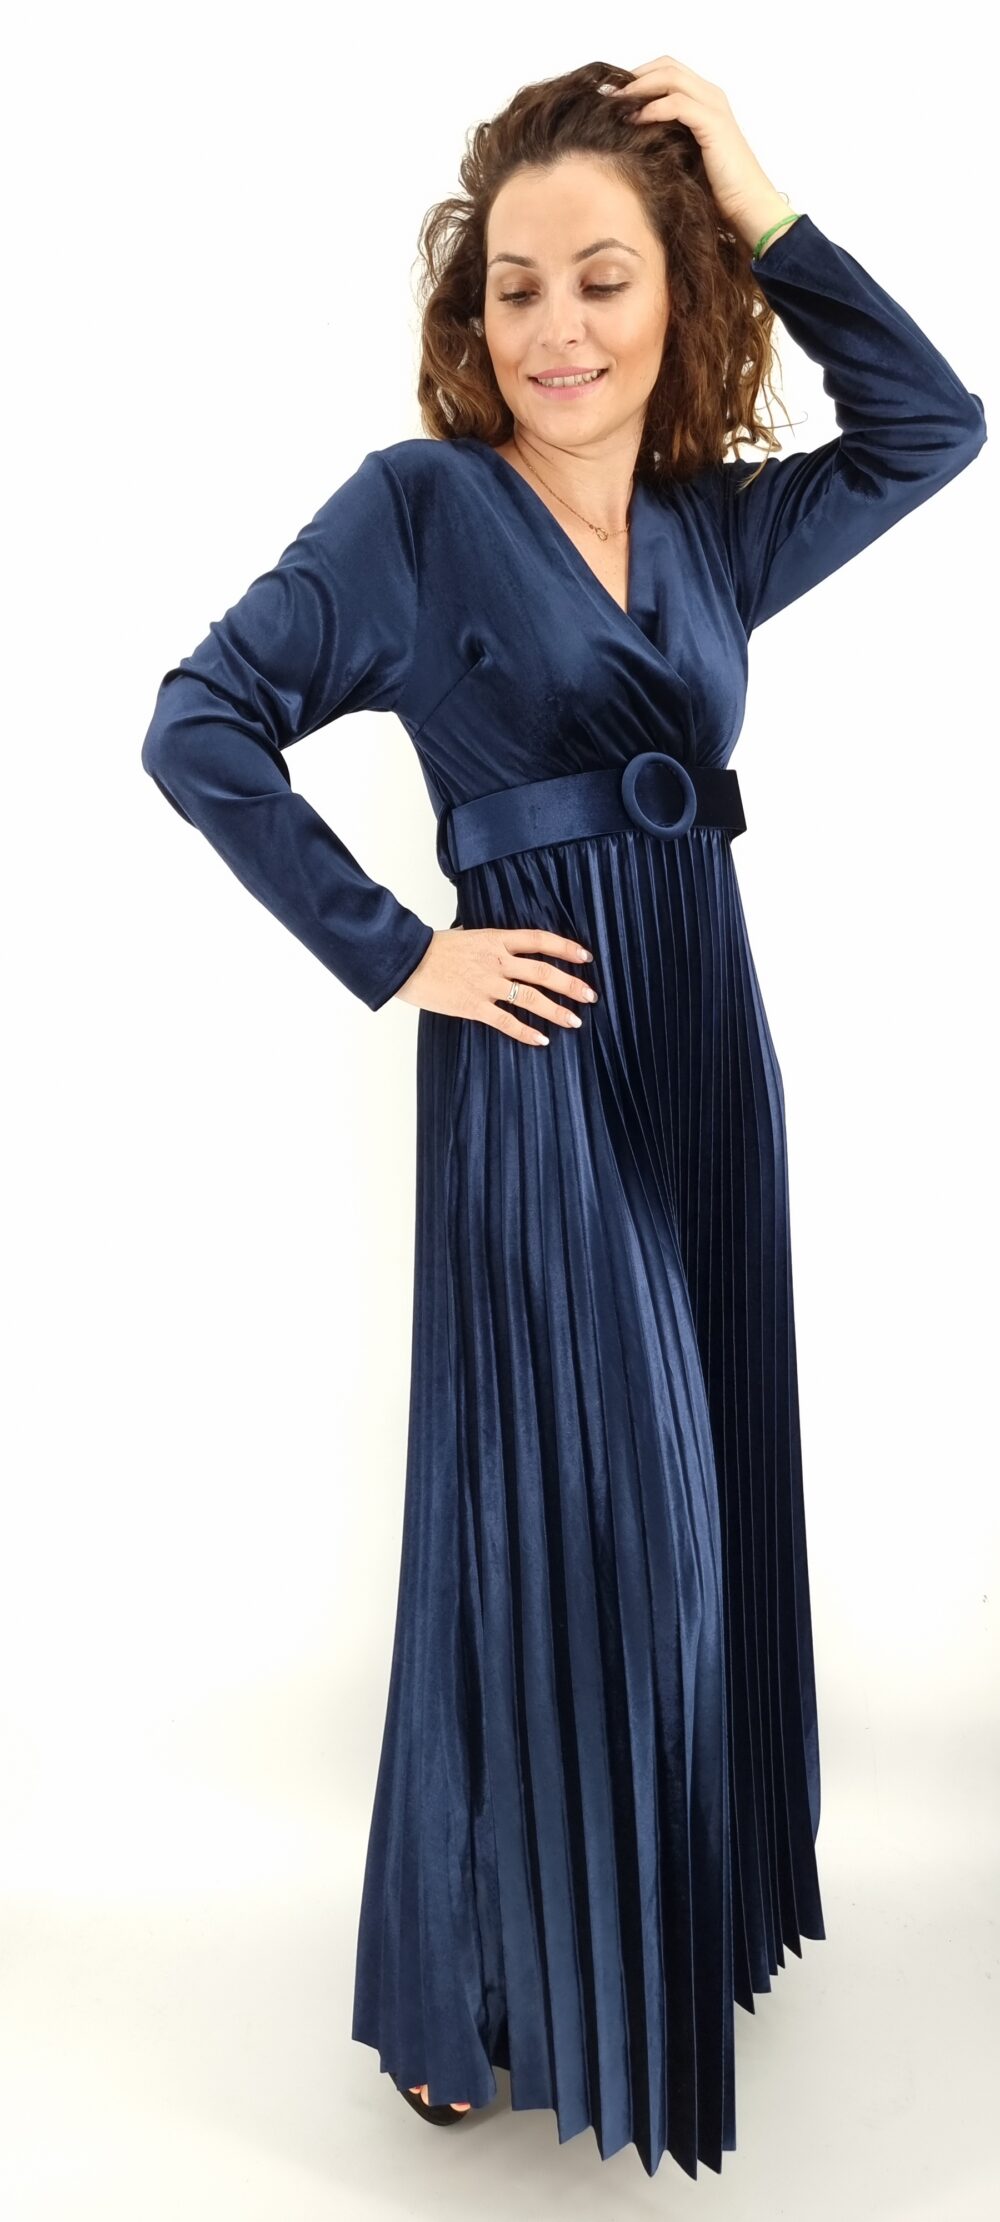 Φόρεμα μακρύ βελουτέ κρουαζέ με ίδια ζώνη και πλισέ τελείωμα μπλε σκούρο